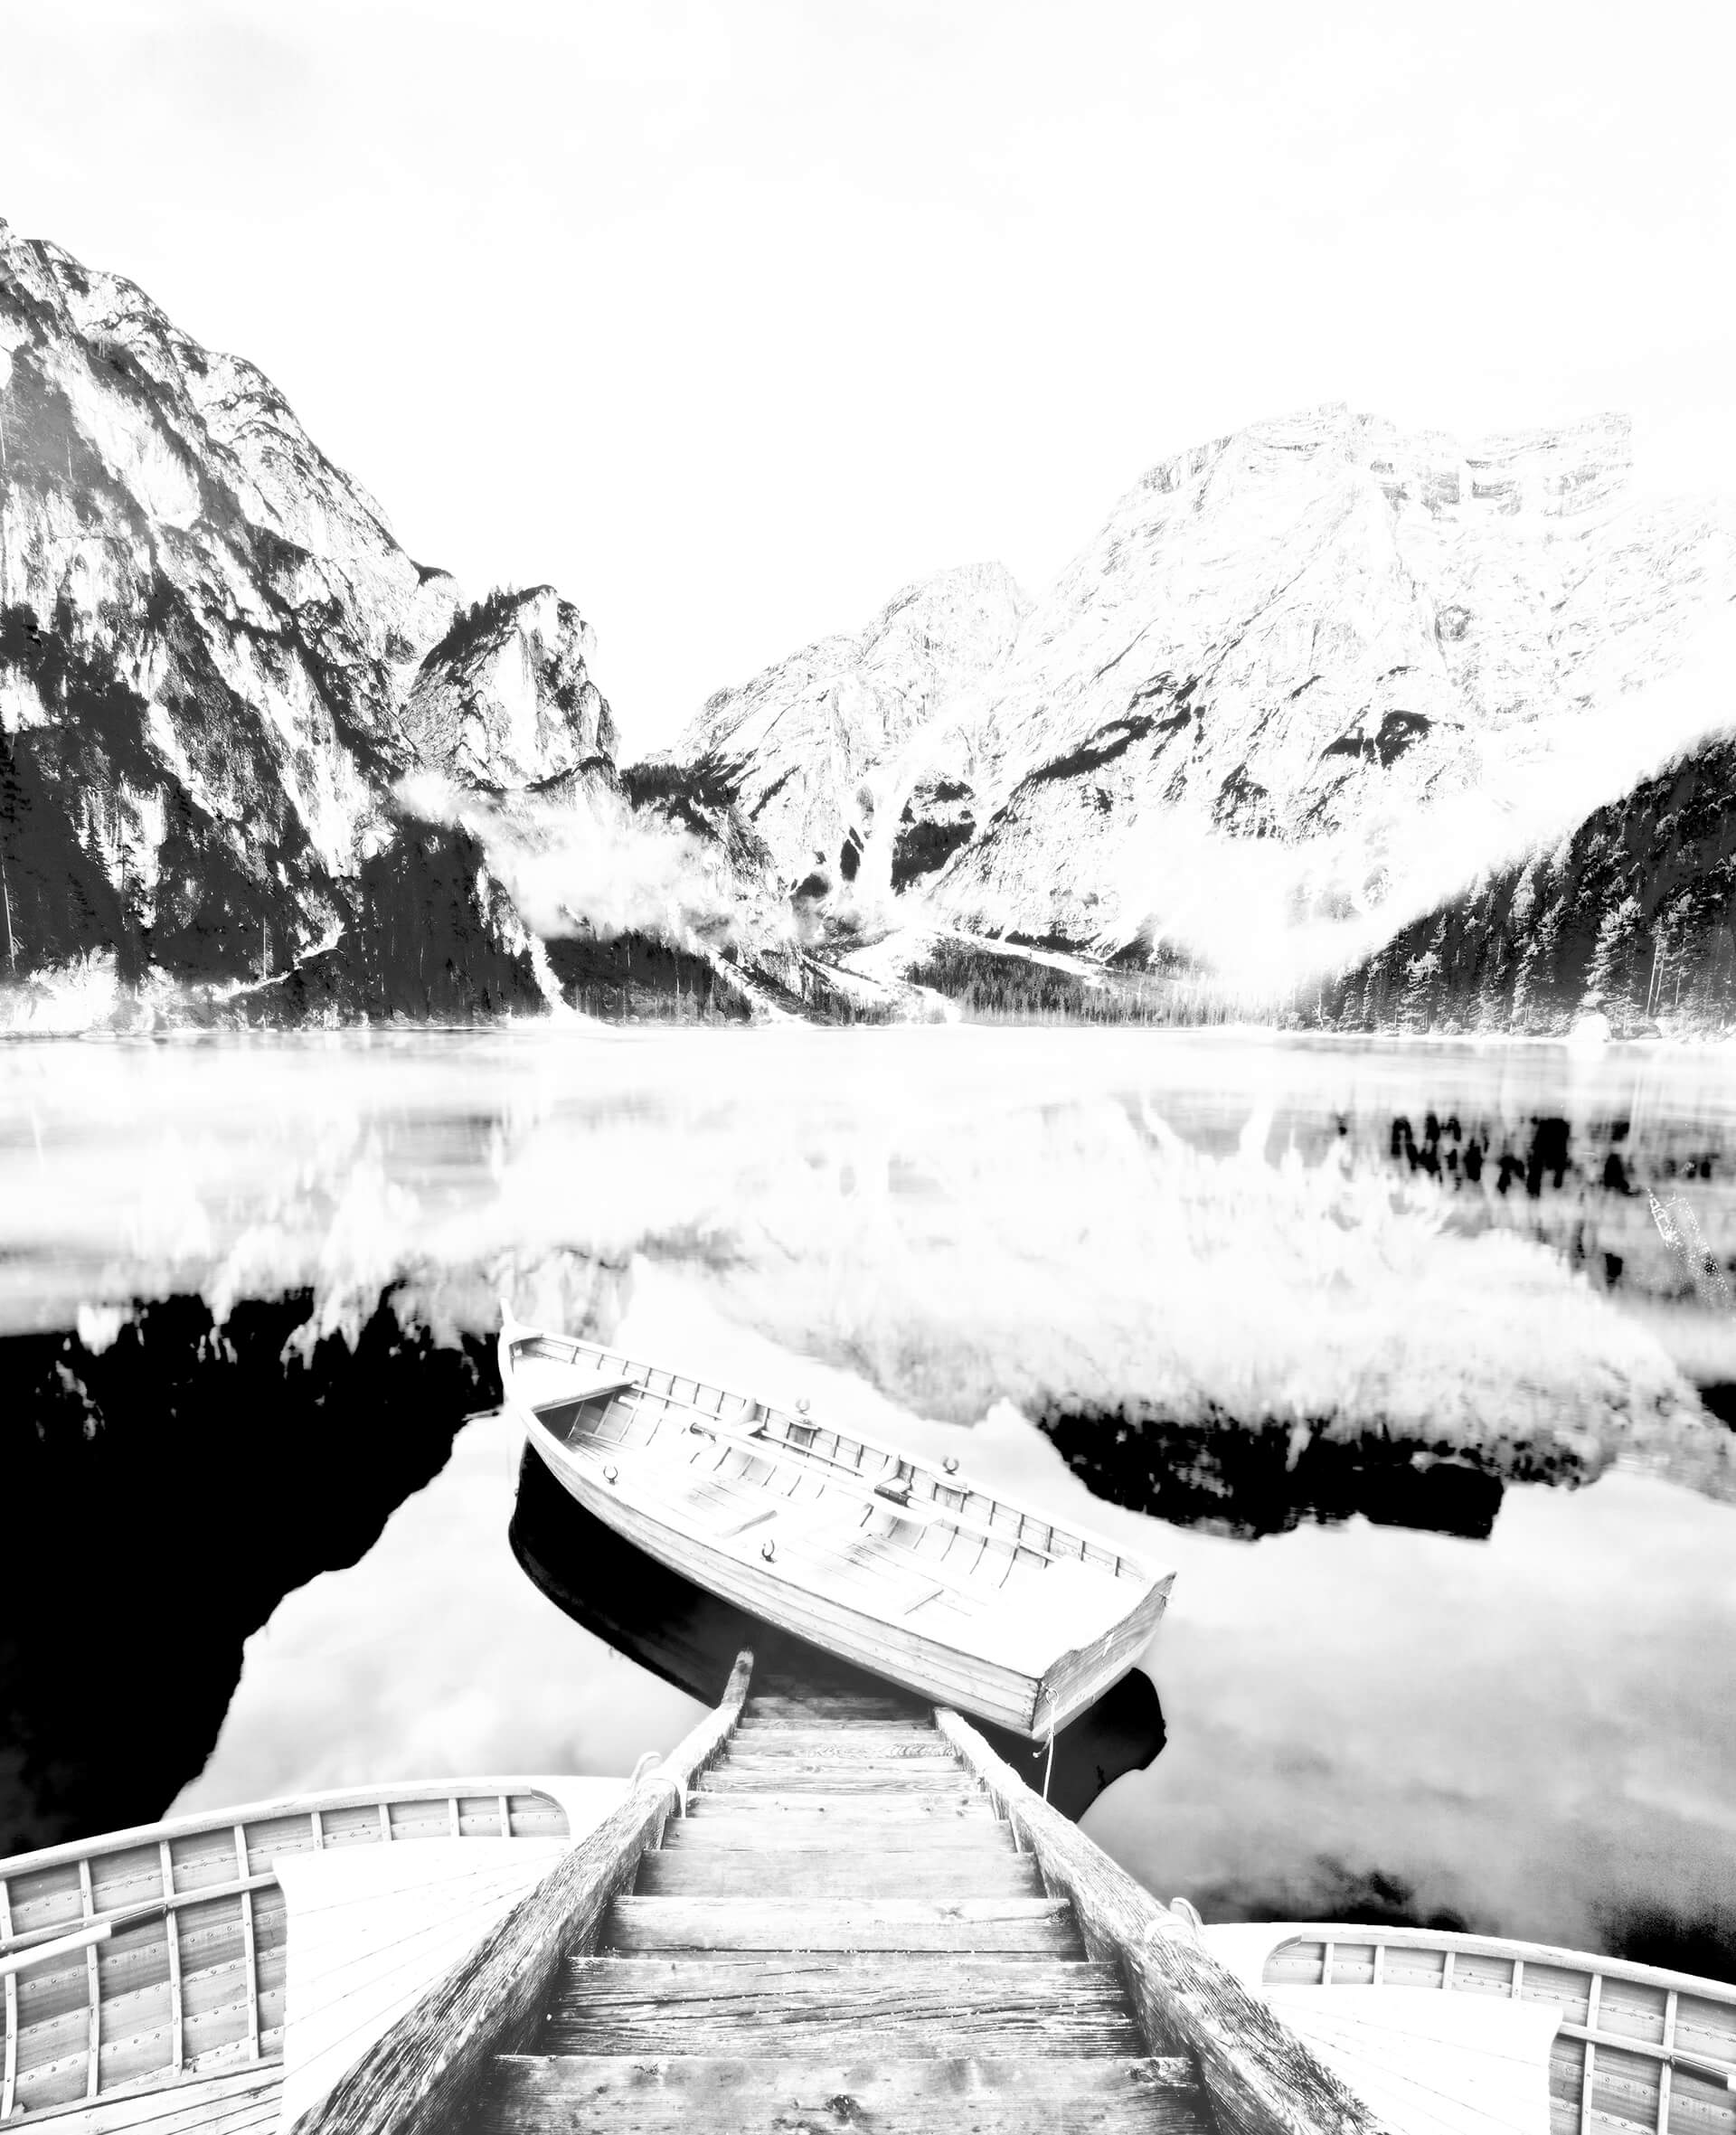 Barco en un lago con paisaje nevado